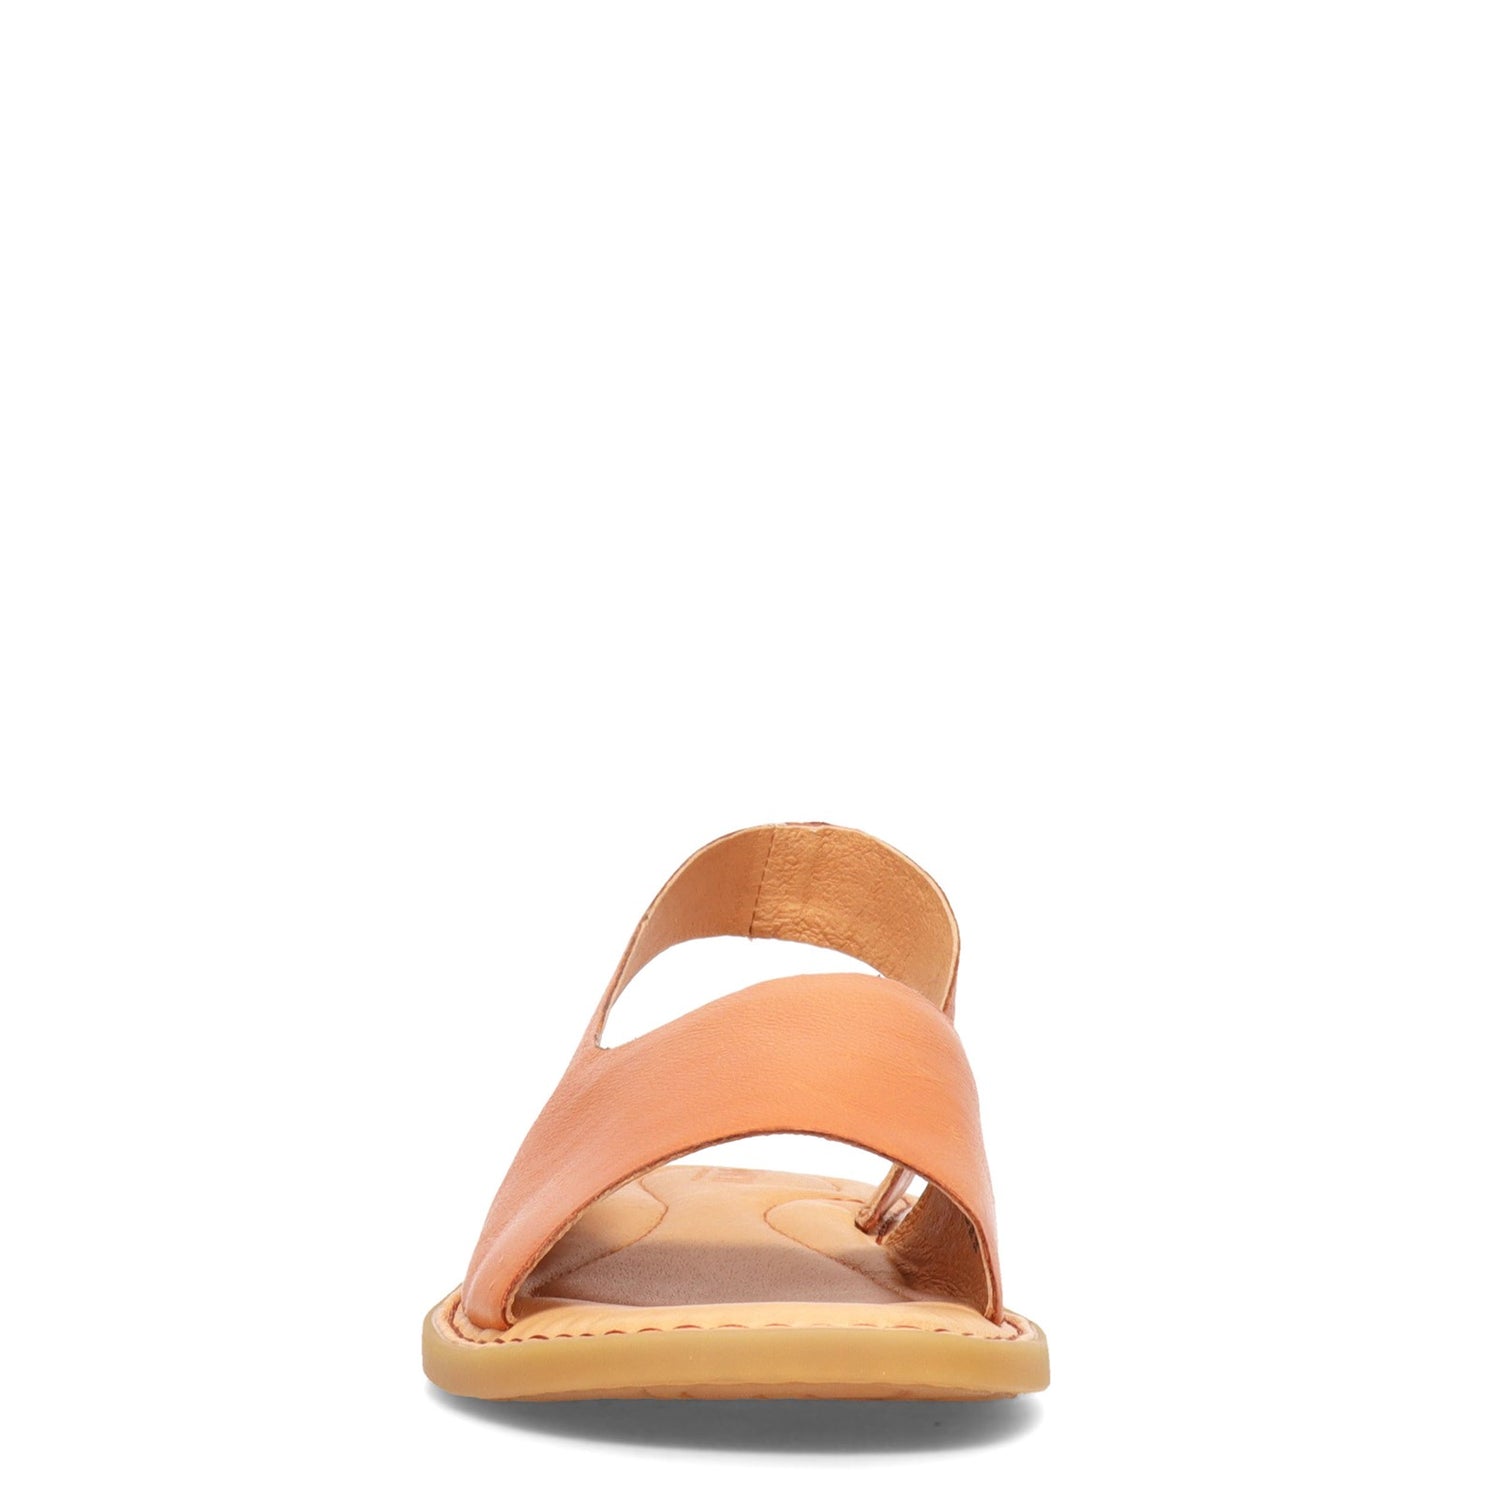 Peltz Shoes  Women's Born Inlet Sandal Tan BR0002216